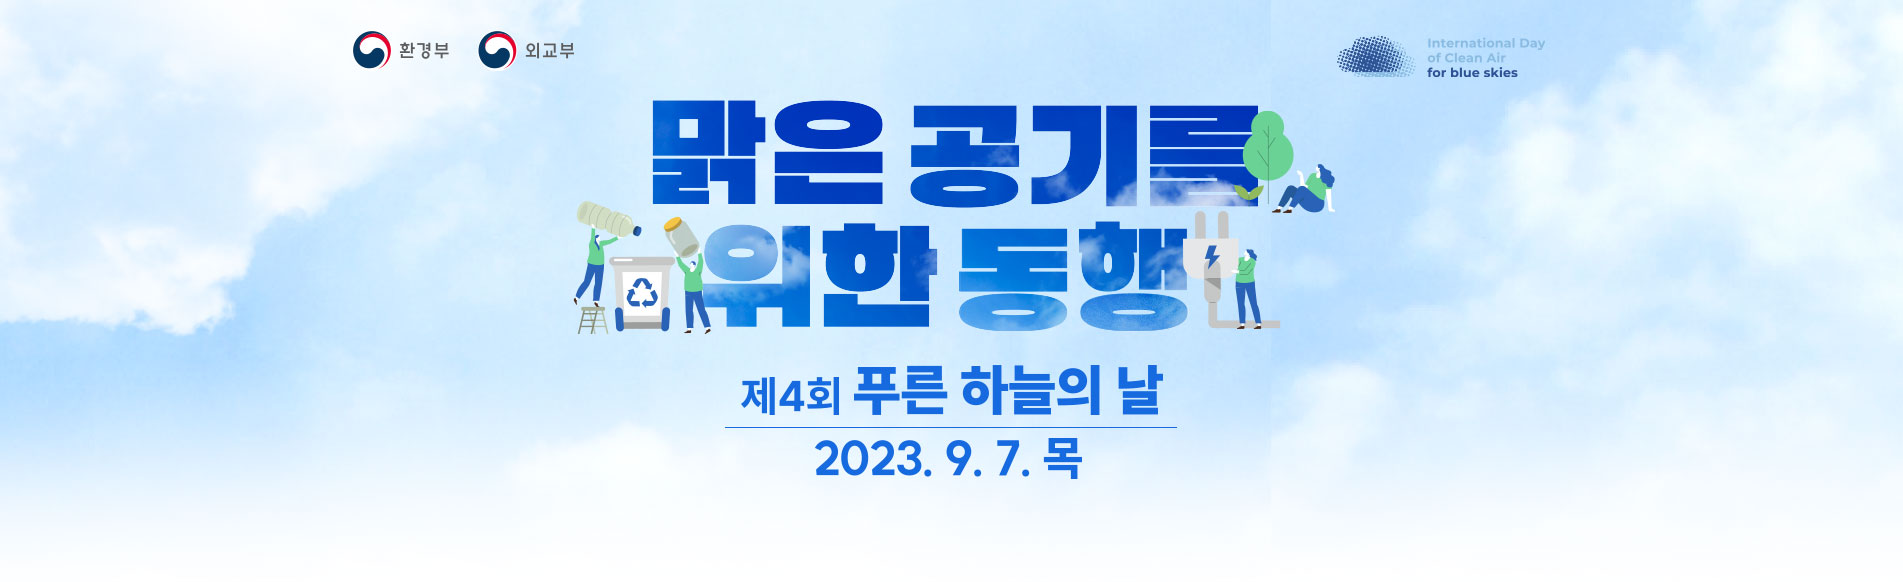 맑은 공기를 위한 동행! 제4회 푸른 하늘의 날 The 4rd International Day of Clean Air for blue skies 2023.9.7(목)